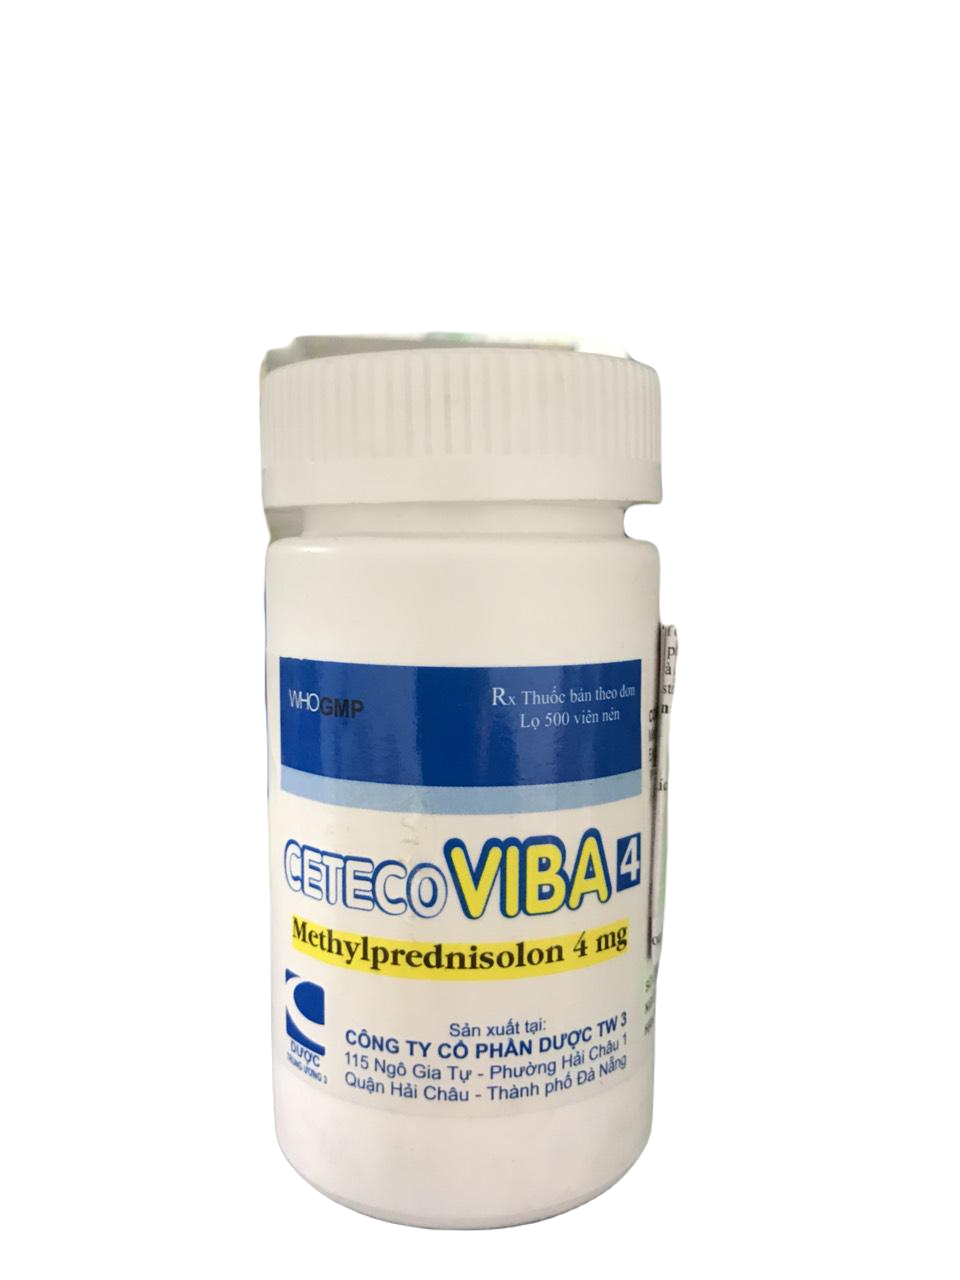 Ceteco Viba 4 (Methylprednisolon) TW3 (C/500v)